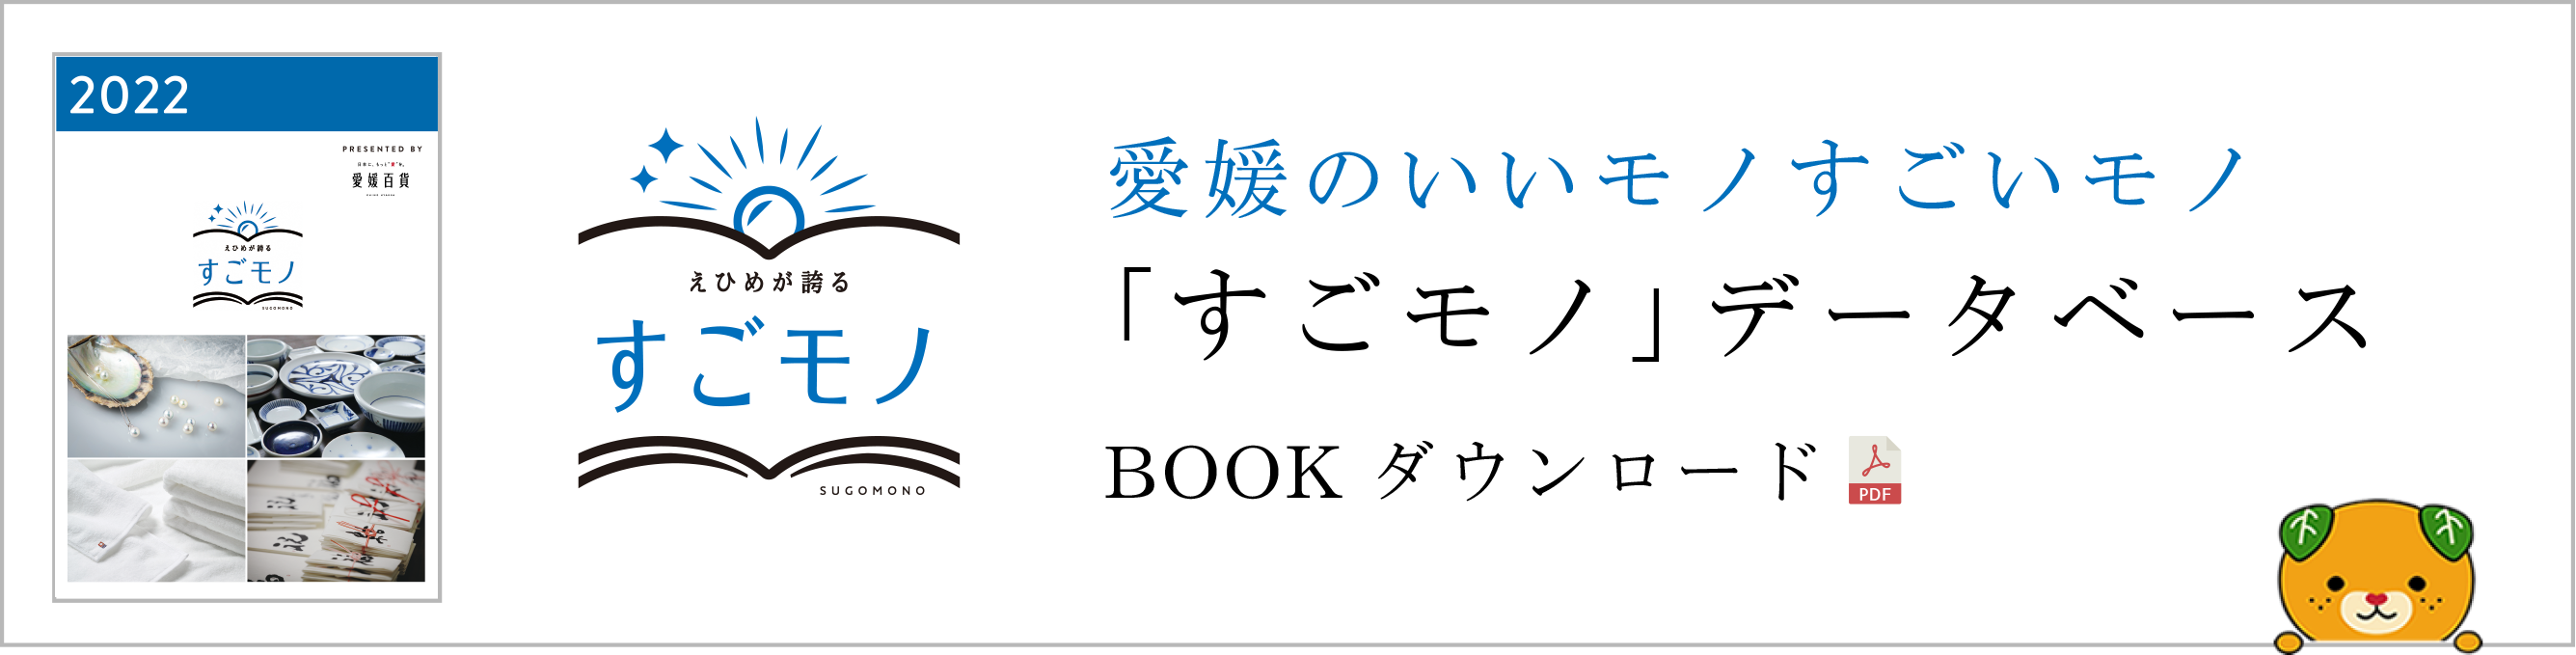 愛媛のいいモノすごいモノ「すごモノ」データベース BOOKダウンロード